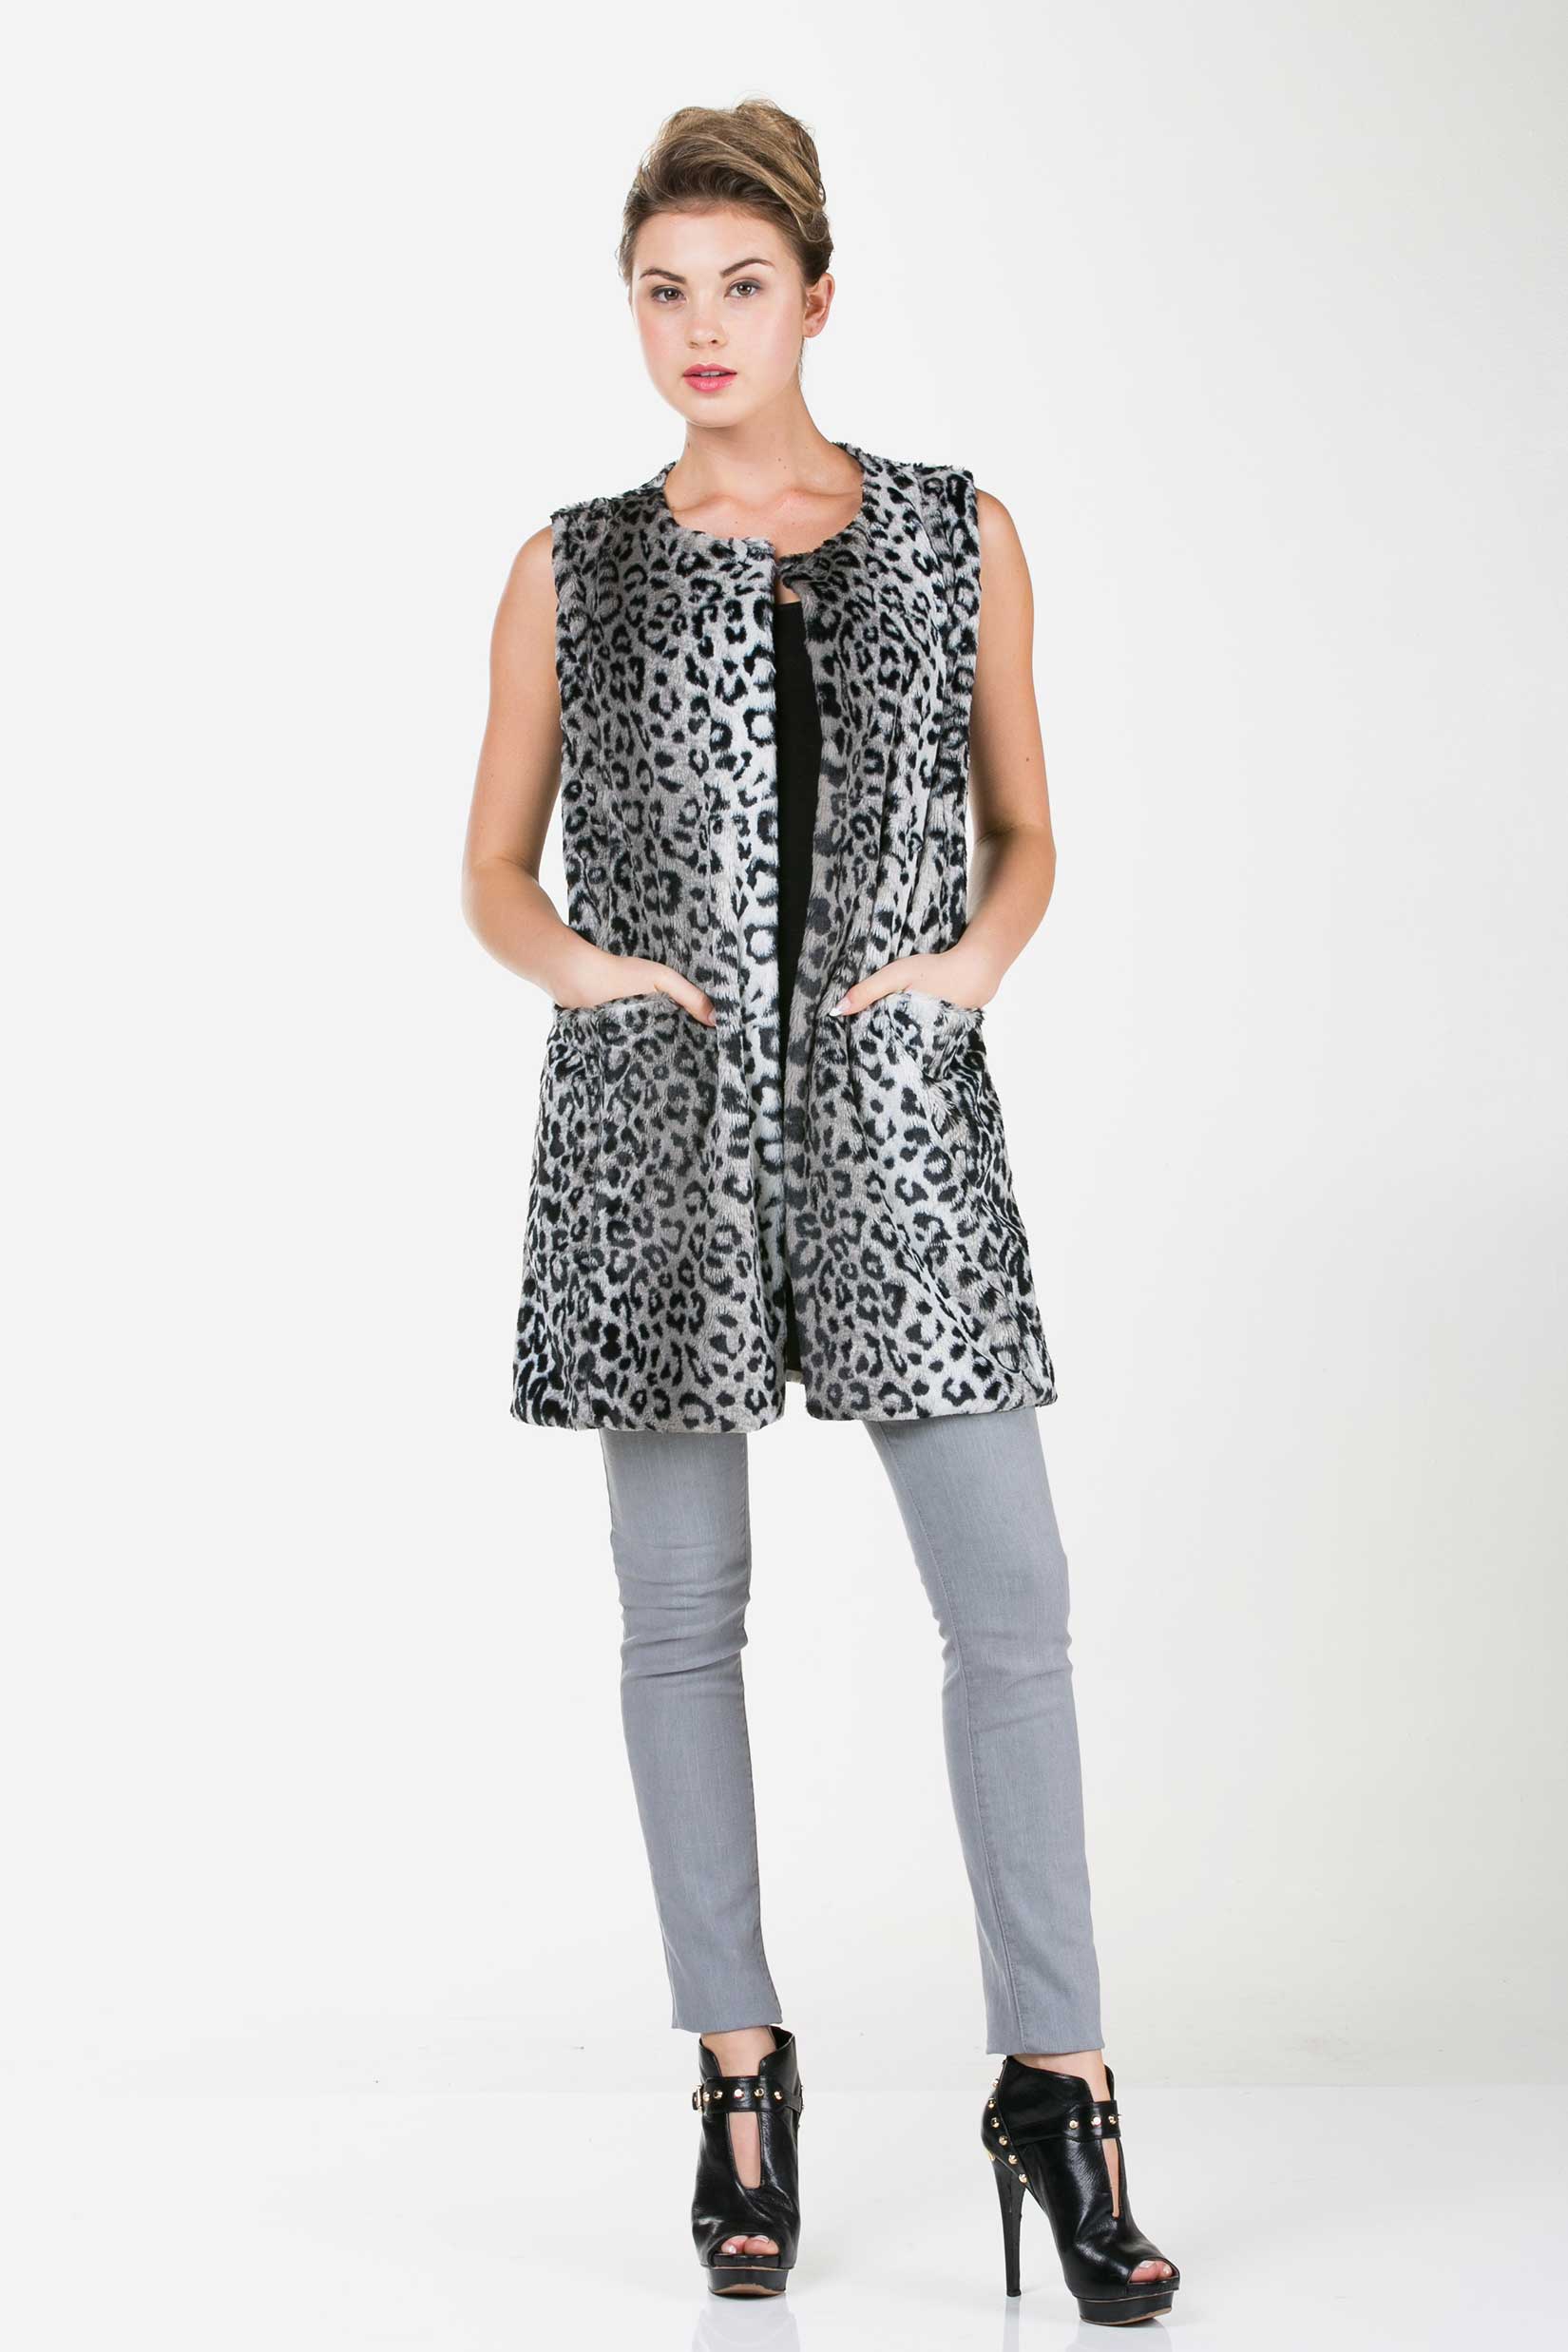 Women's Faux Fur Long Vest with Pocket on the Front - Shop Lev